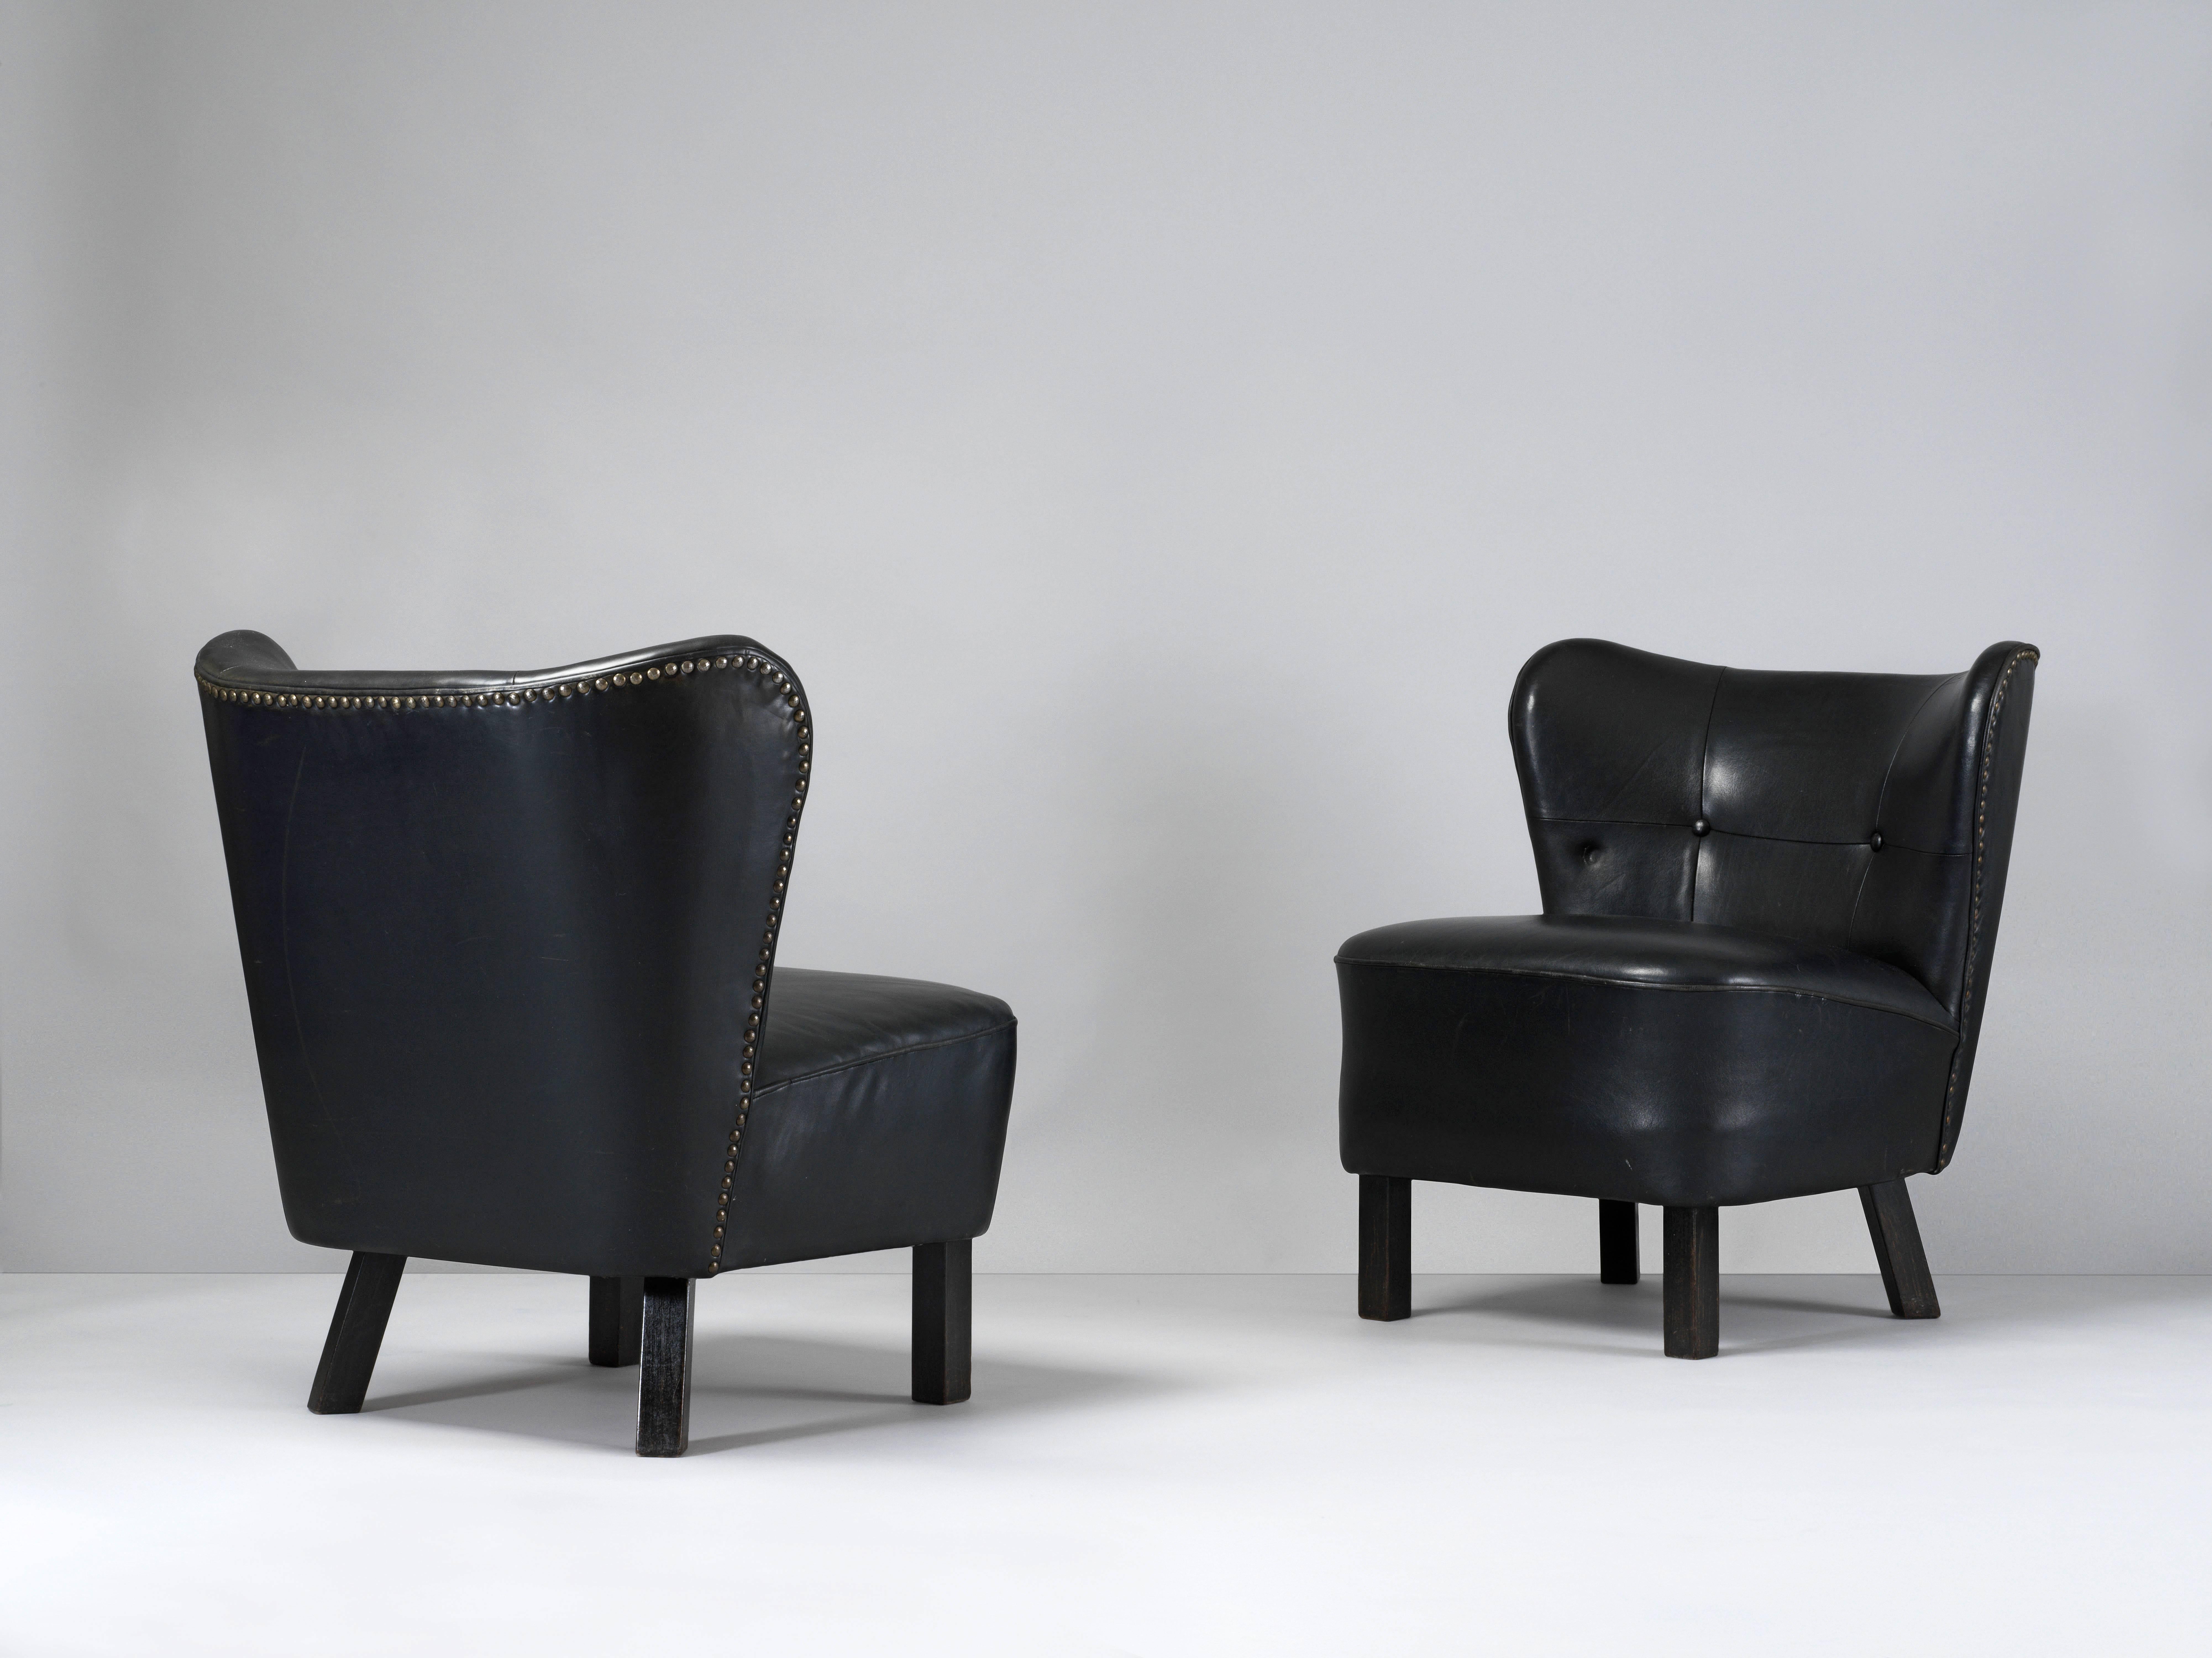 Ein Paar modernistische Sessel aus den 1940er Jahren. Ein frühes Beispiel des traditionellen dänischen Möbelbaus mit originaler schwarz gefärbter Lederpolsterung und Messingnägeln, die die Rückseite und die Holzbeine mit originaler mattschwarzer